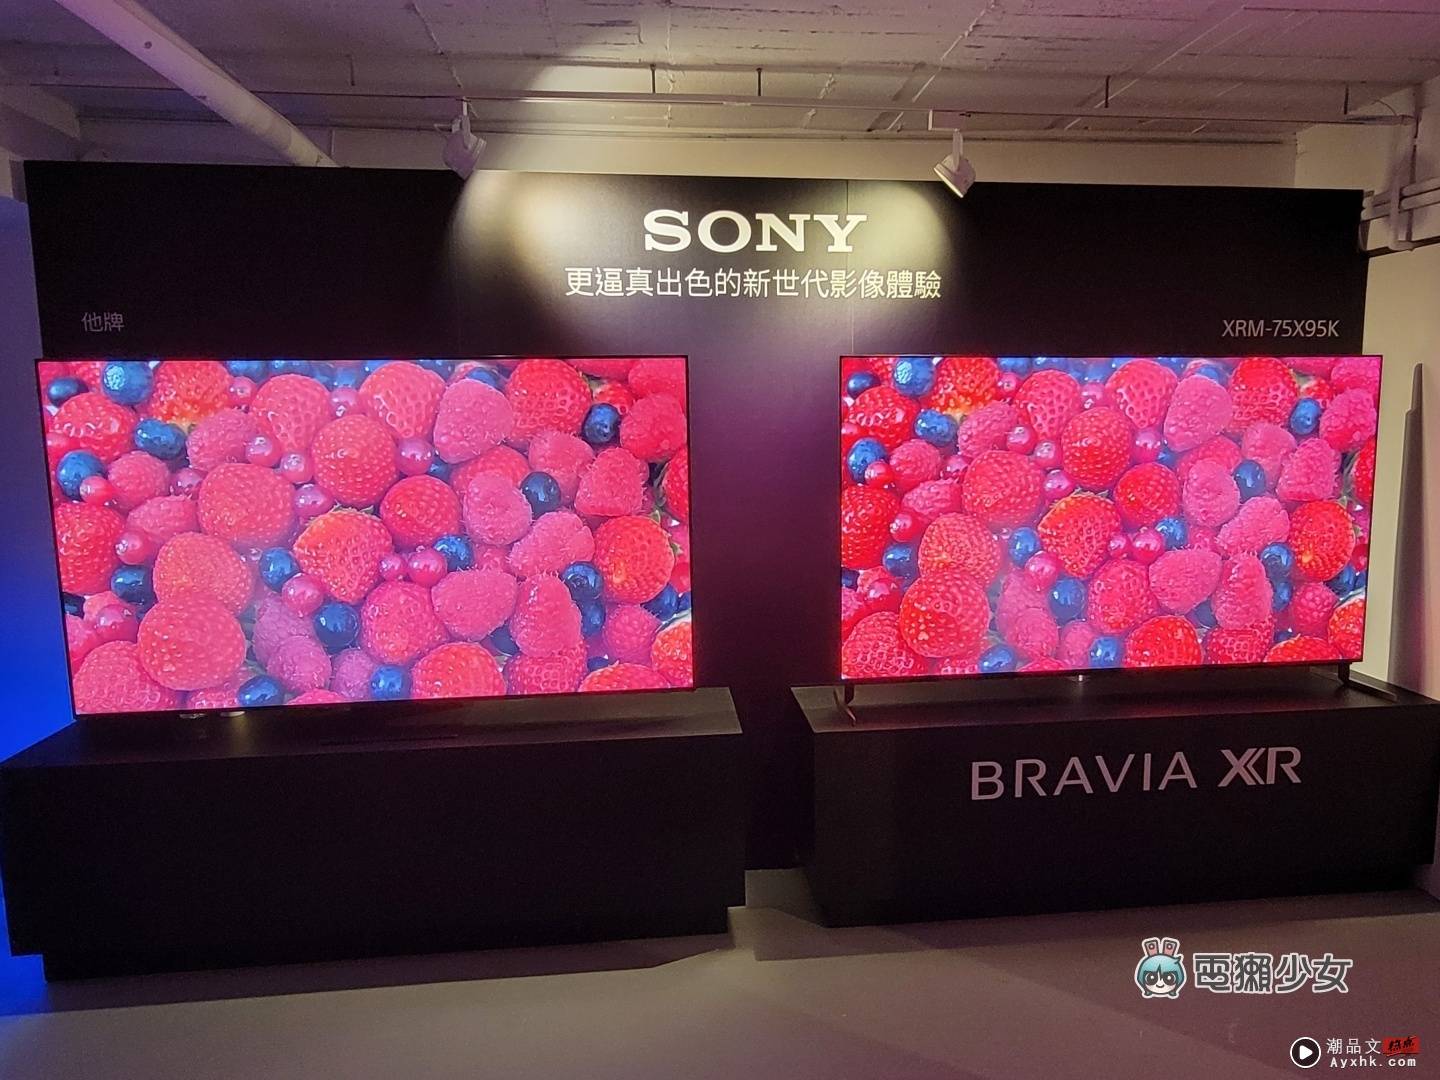 出门｜Sony BRAAIA XR 电视全系列皆为 PS5 推荐机种，体验 OLED、Mini LED 的旗舰级显色 数码科技 图11张